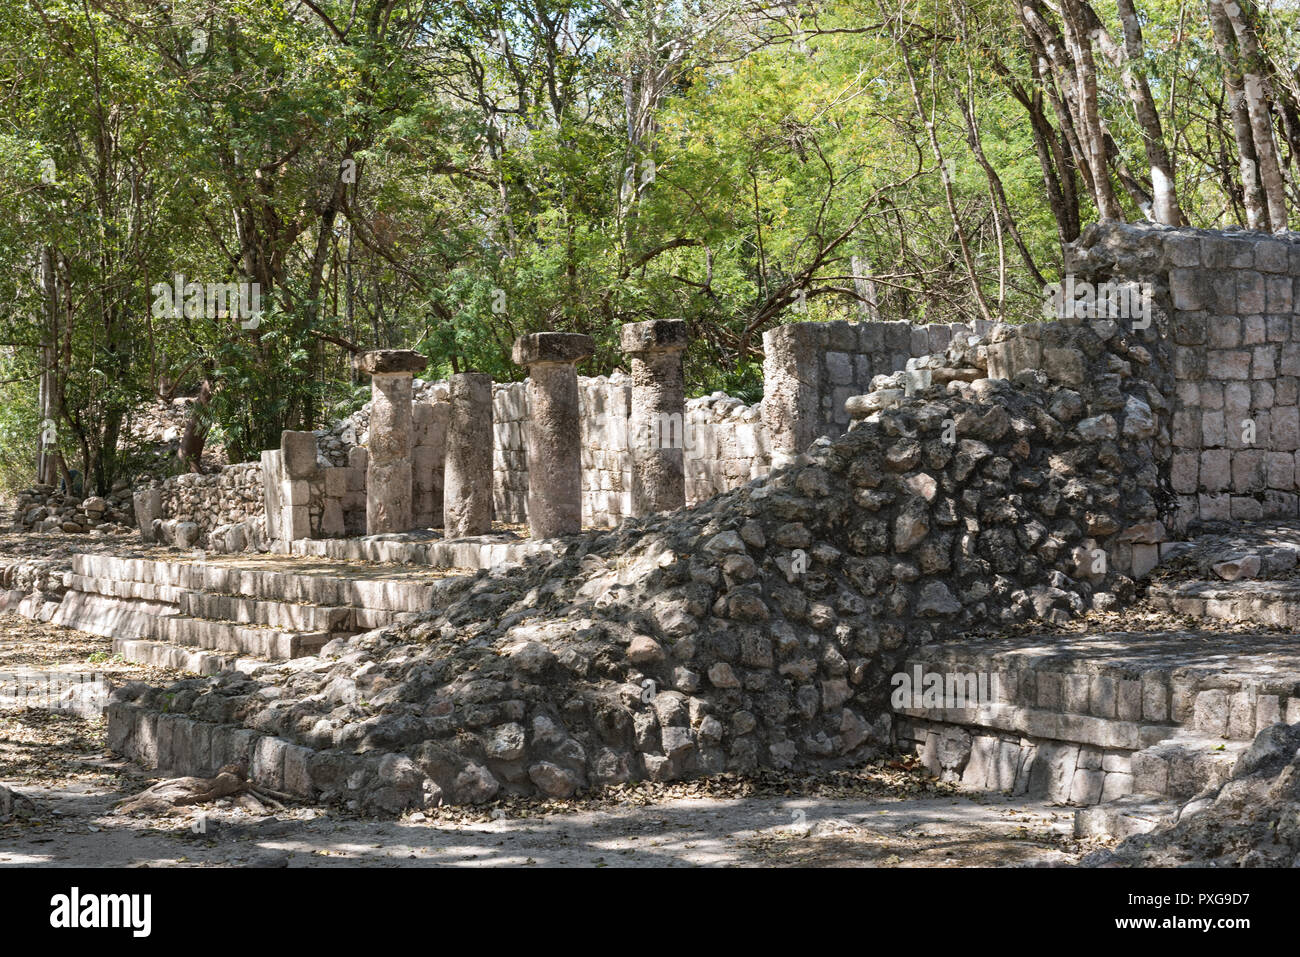 Ruines de l'ancienne ville maya de Edzna près de Campeche, Mexique Banque D'Images